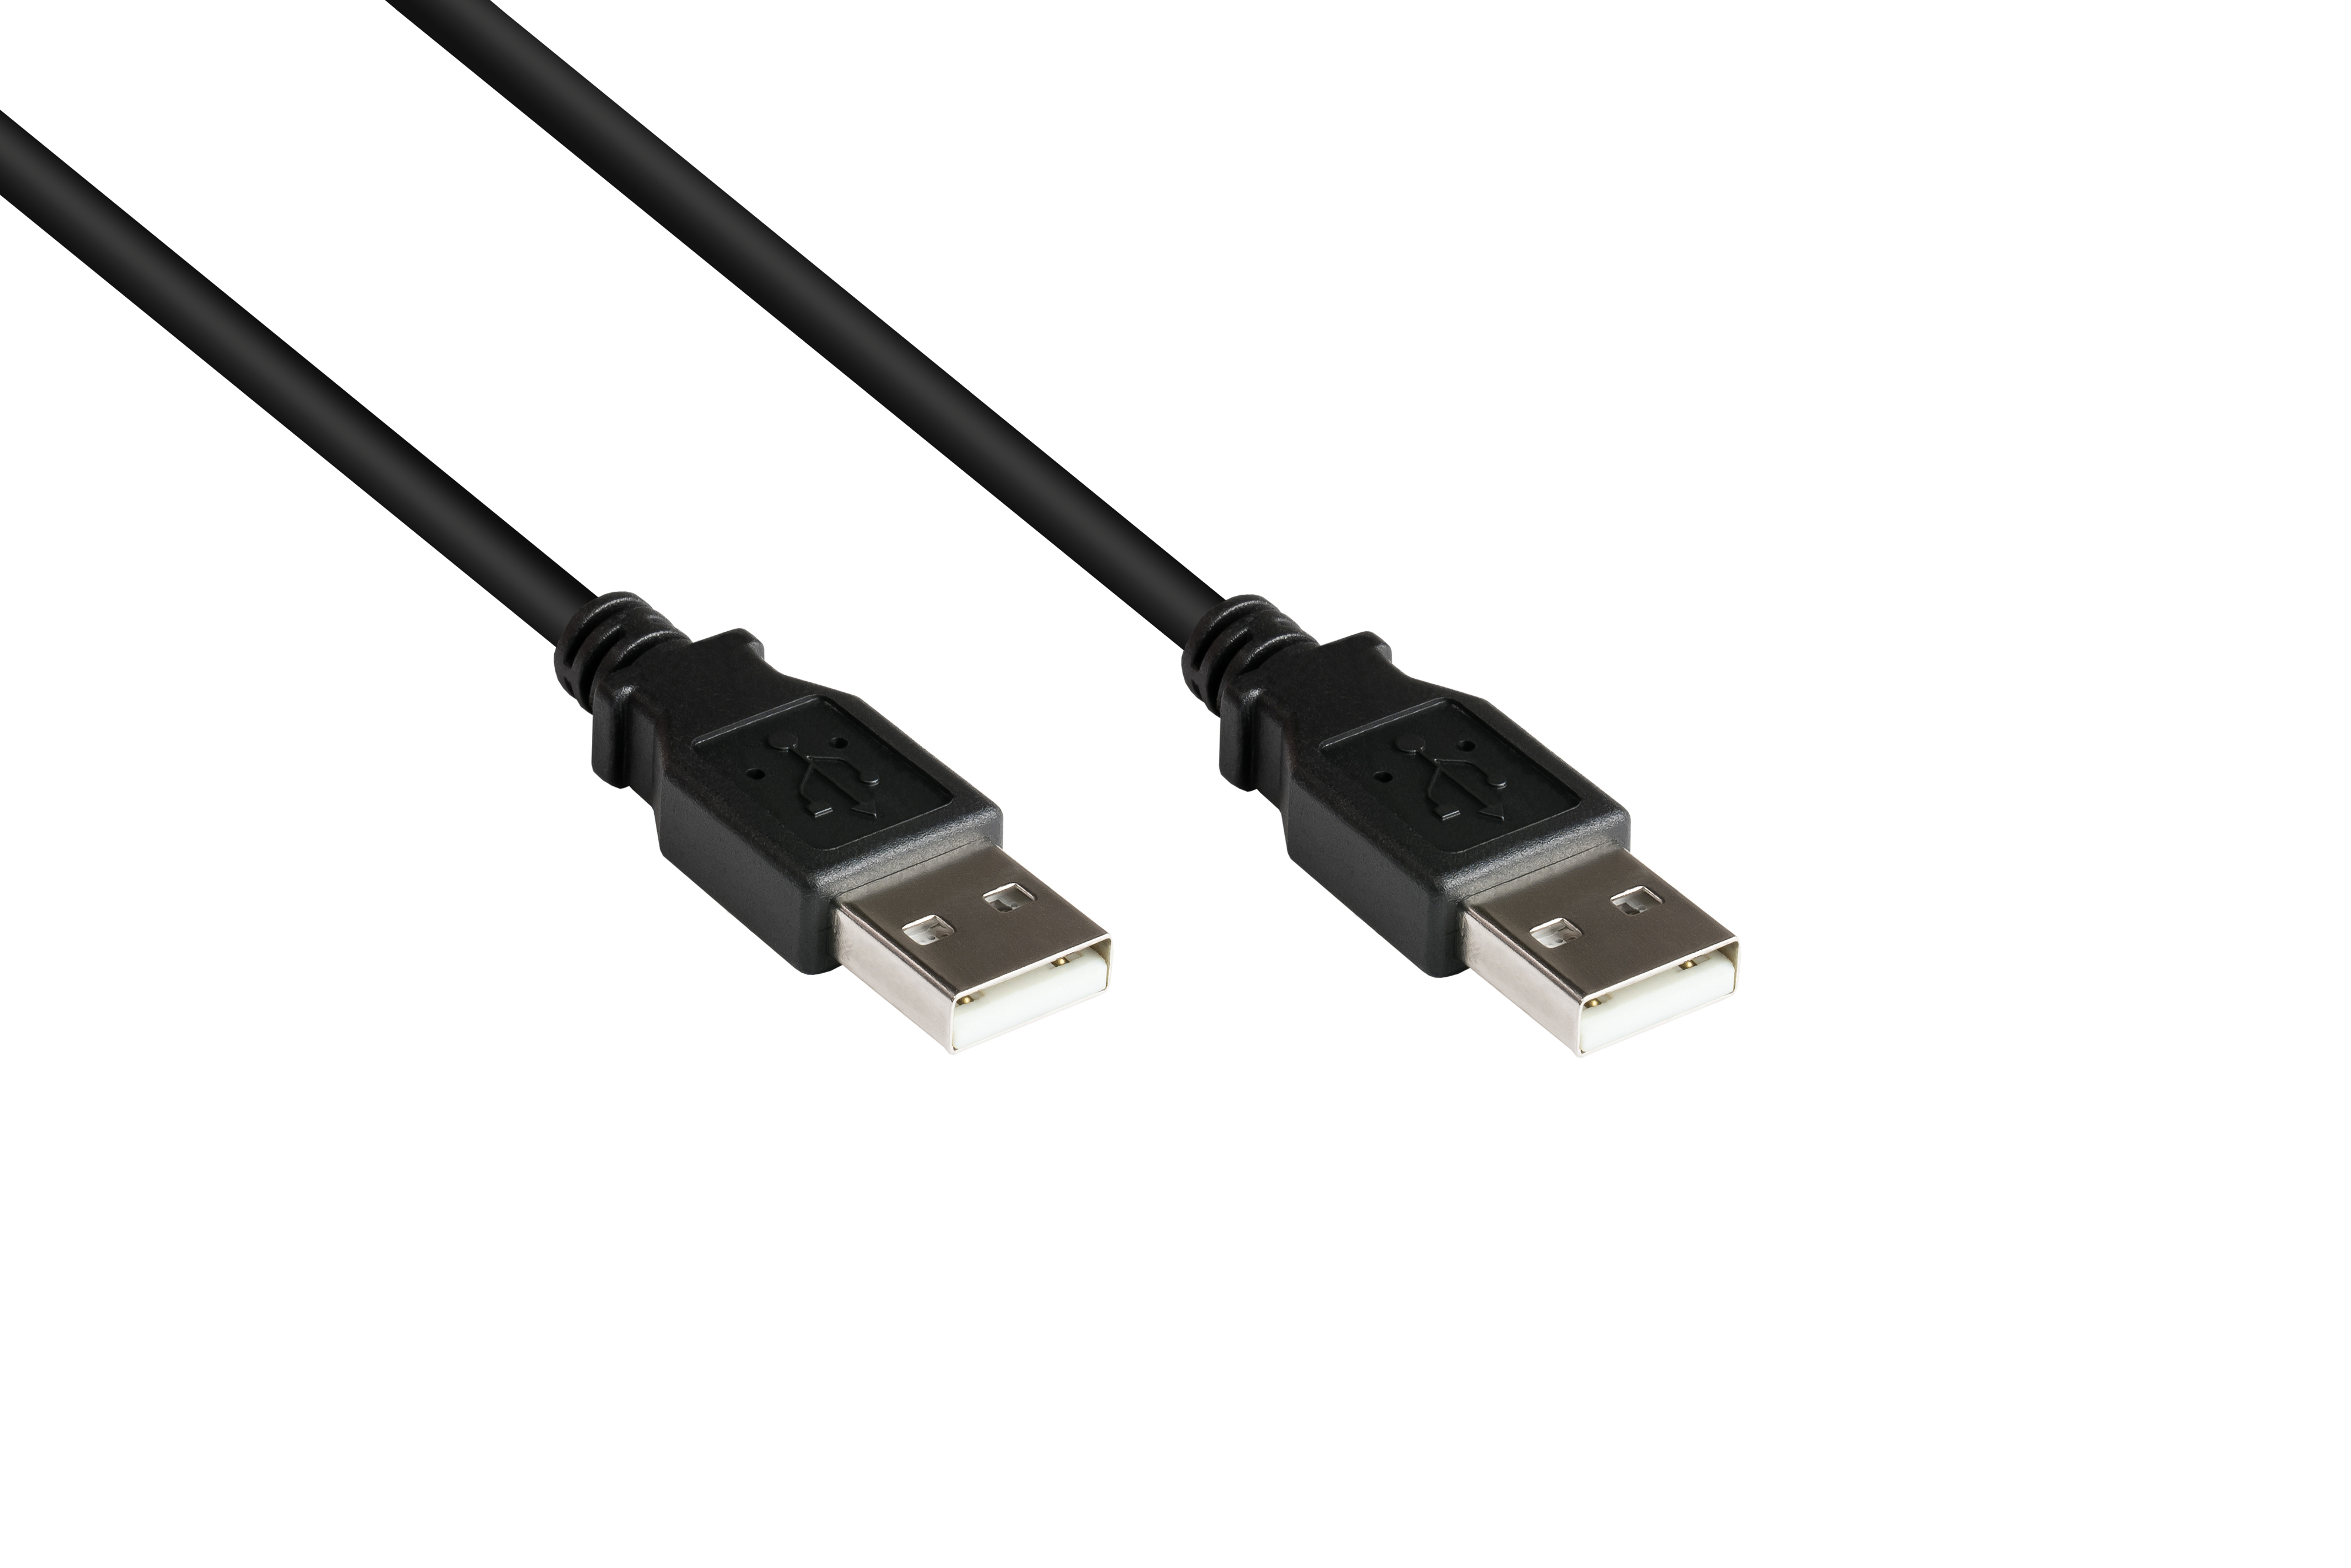 Stecker Anschlusskabel A, USB an 2.0 Stecker A KABELMEISTER schwarz